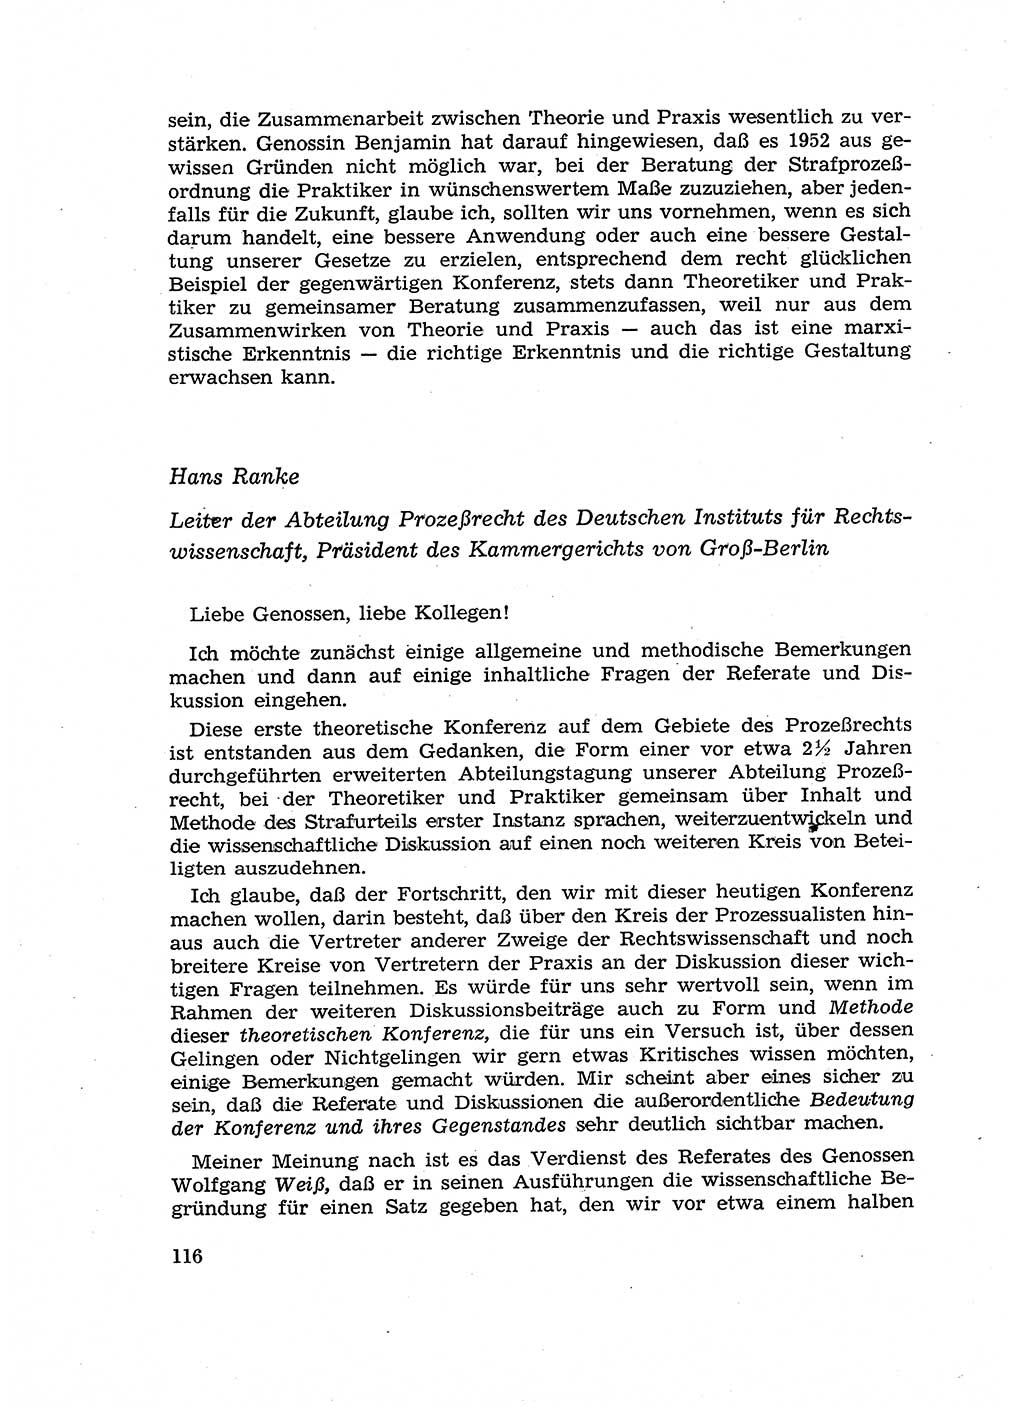 Fragen des Beweisrechts im Strafprozess [Deutsche Demokratische Republik (DDR)] 1956, Seite 116 (Fr. BeweisR. Str.-Proz. DDR 1956, S. 116)